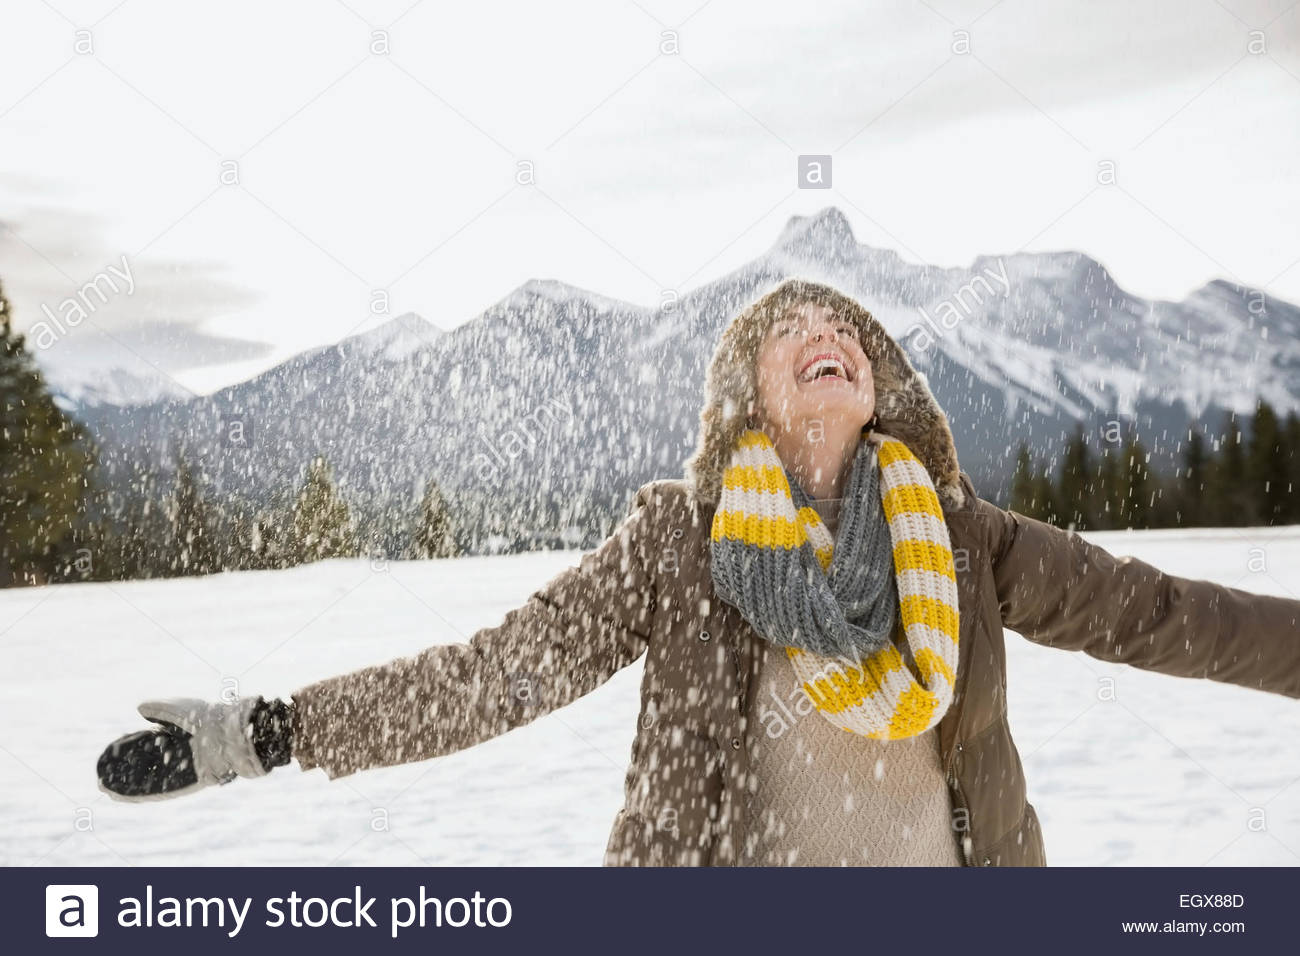 La neige qui tombe autour d'exubérante woman with arms outstretched Banque D'Images